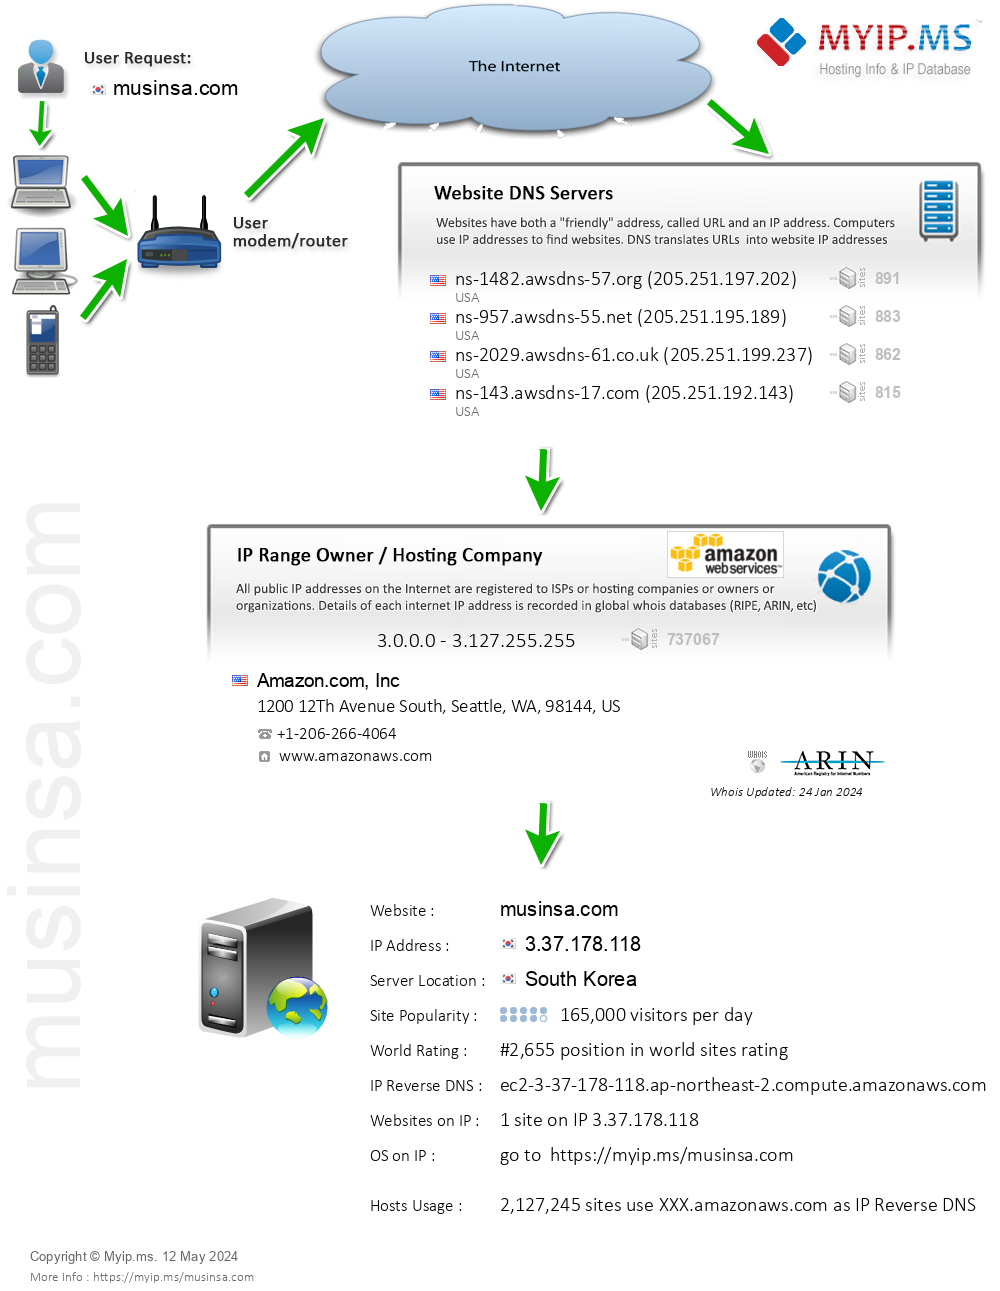 Musinsa.com - Website Hosting Visual IP Diagram